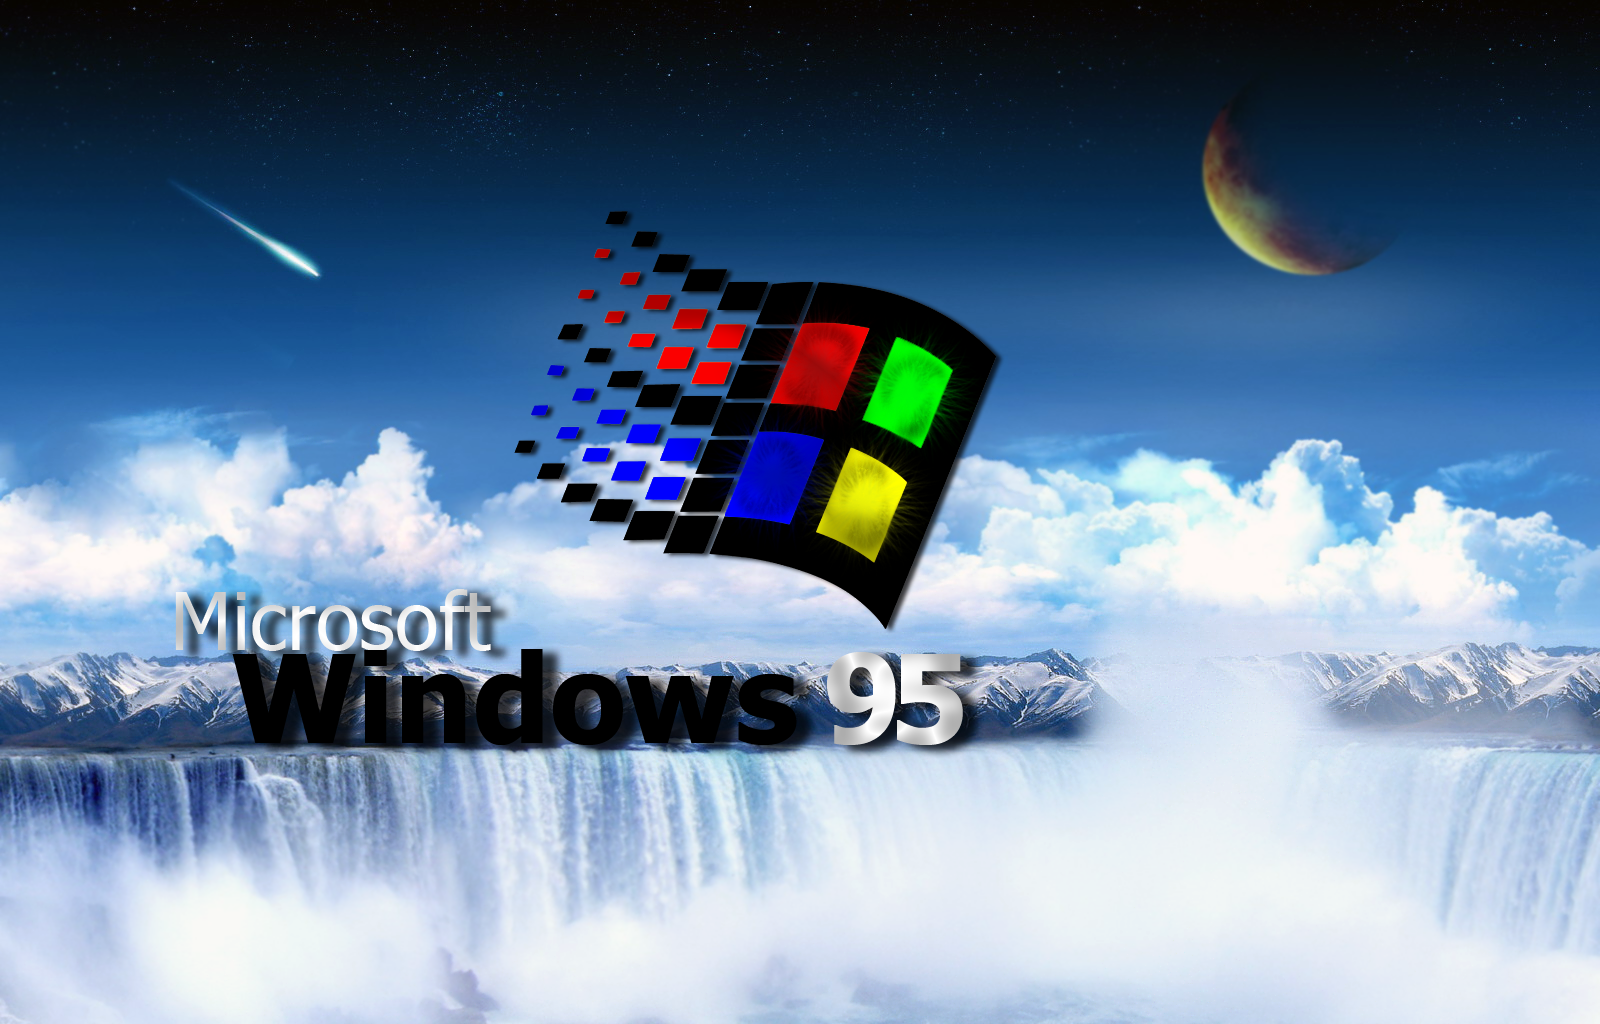 Windows 95 Wallpaper , HD Wallpaper & Backgrounds